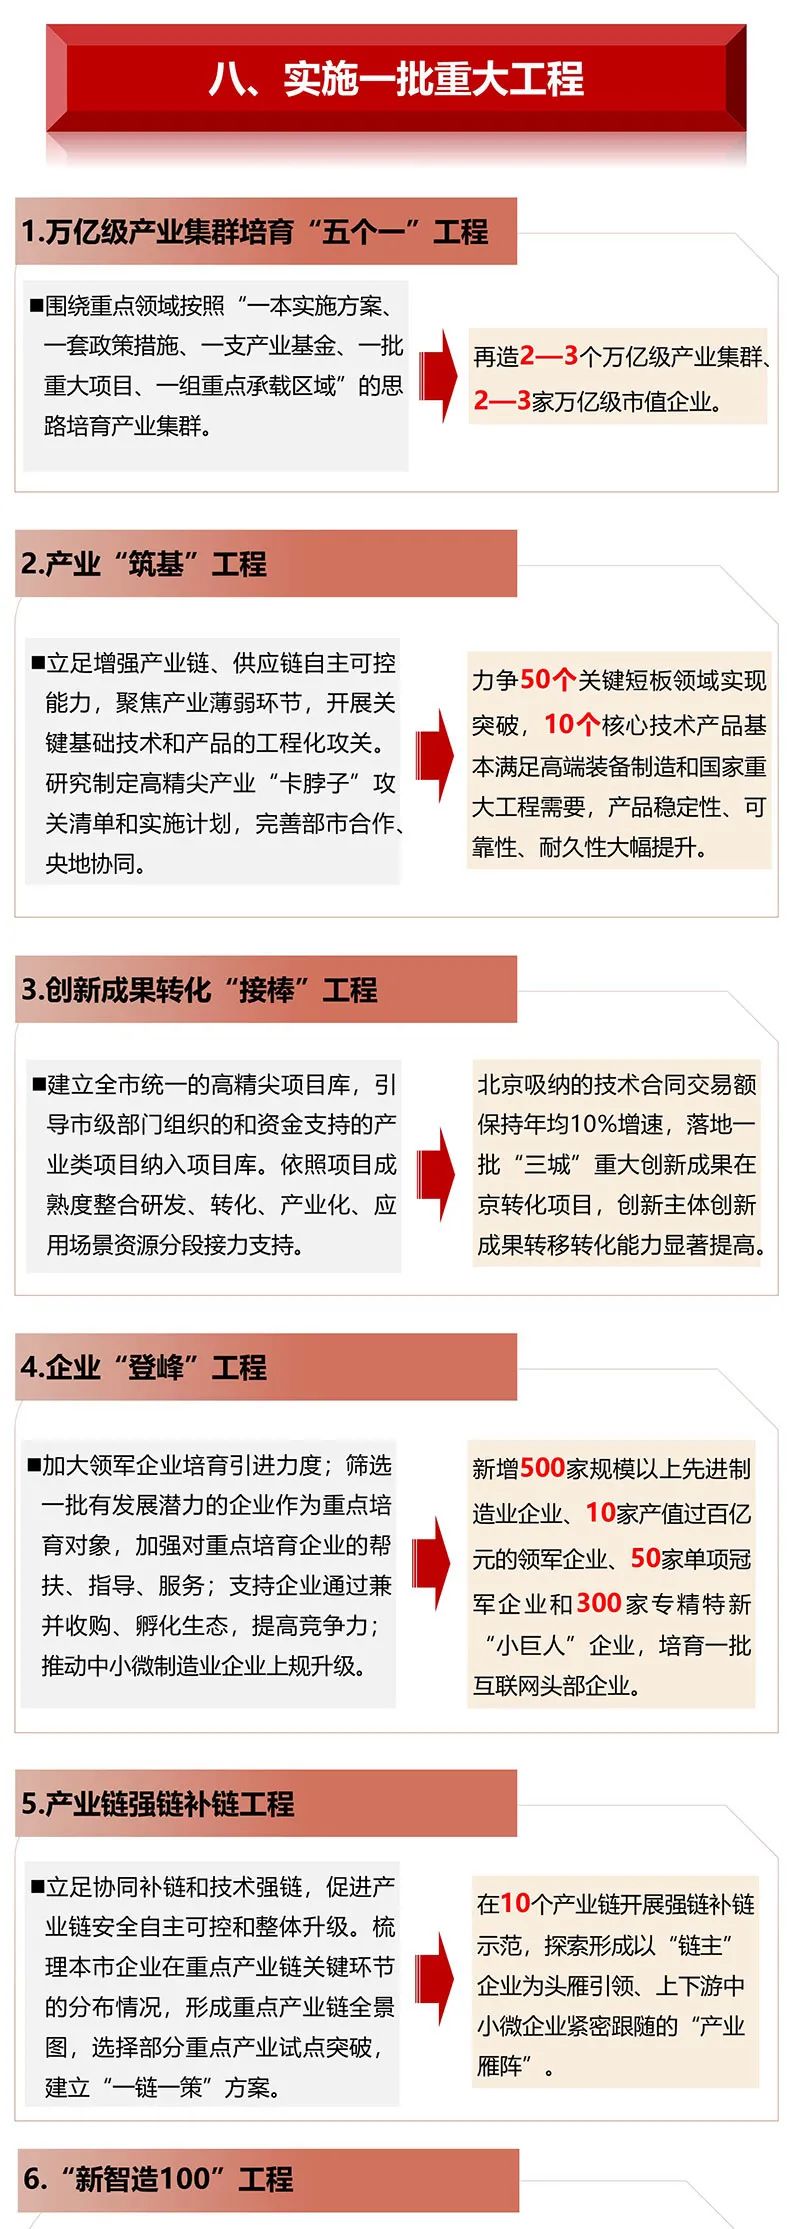 图解北京市十四五时期高精尖产业发展规划